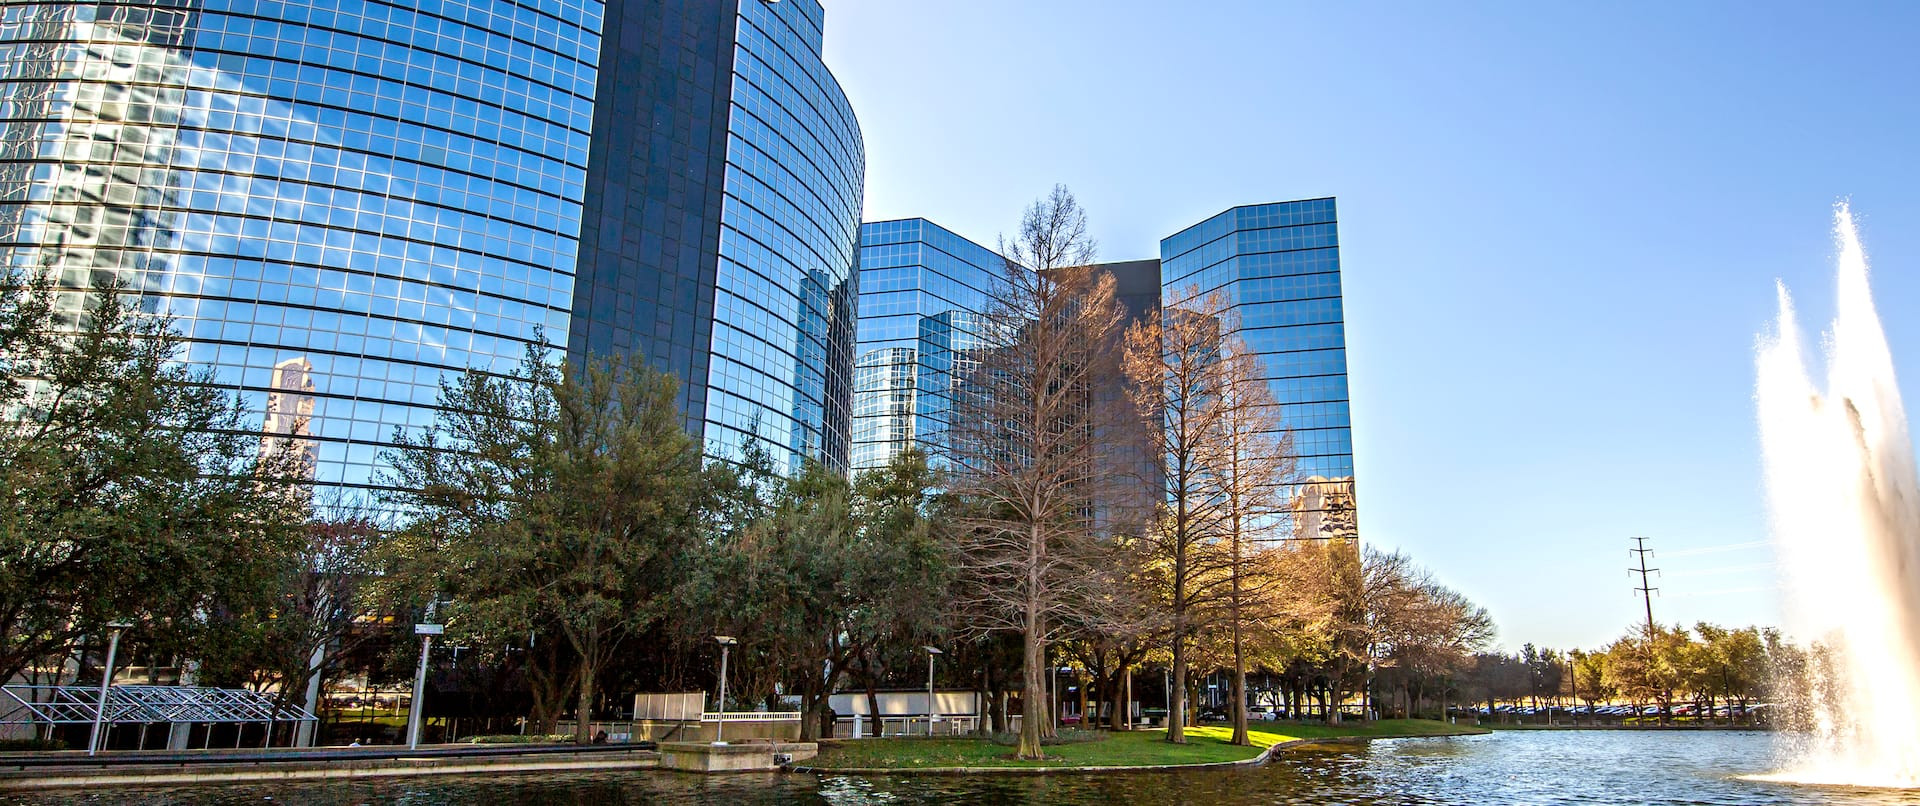 The 10 best hotels near Galleria Dallas in Dallas, United States